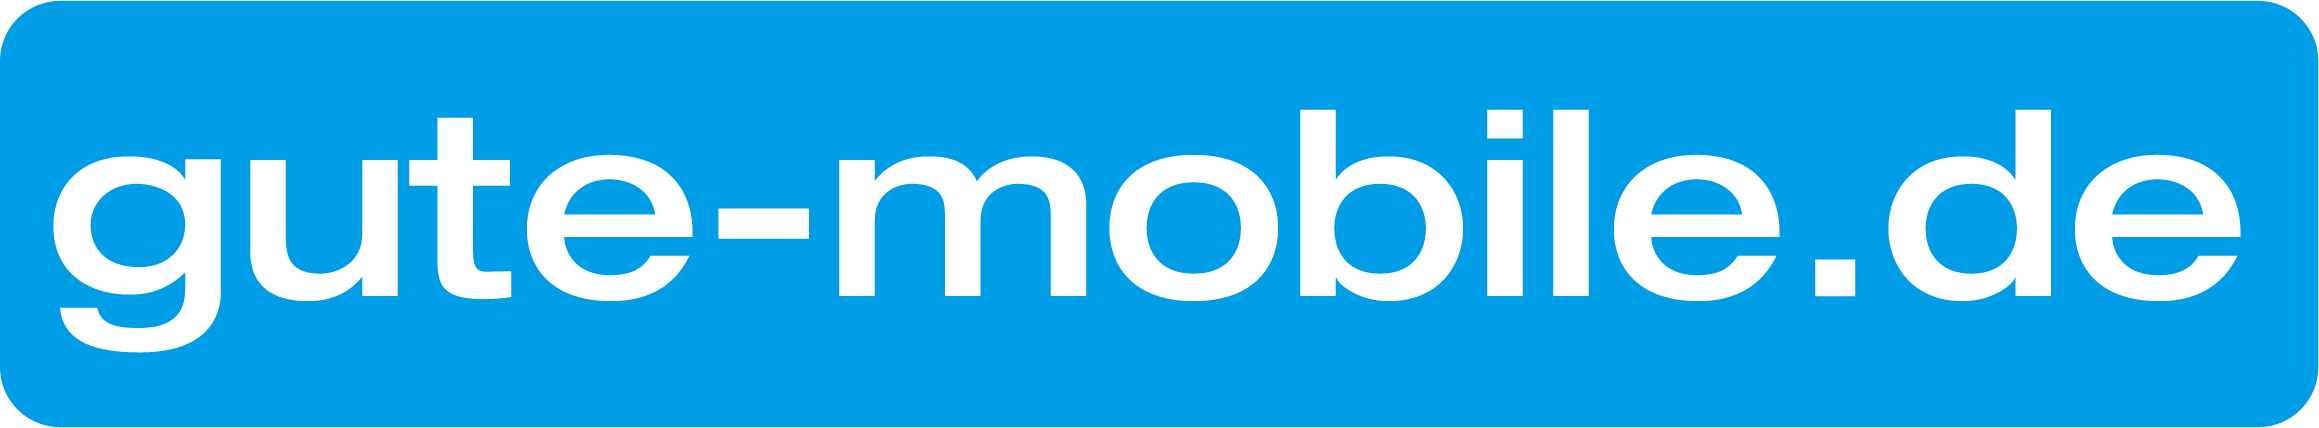 gute-mobile.de Logo